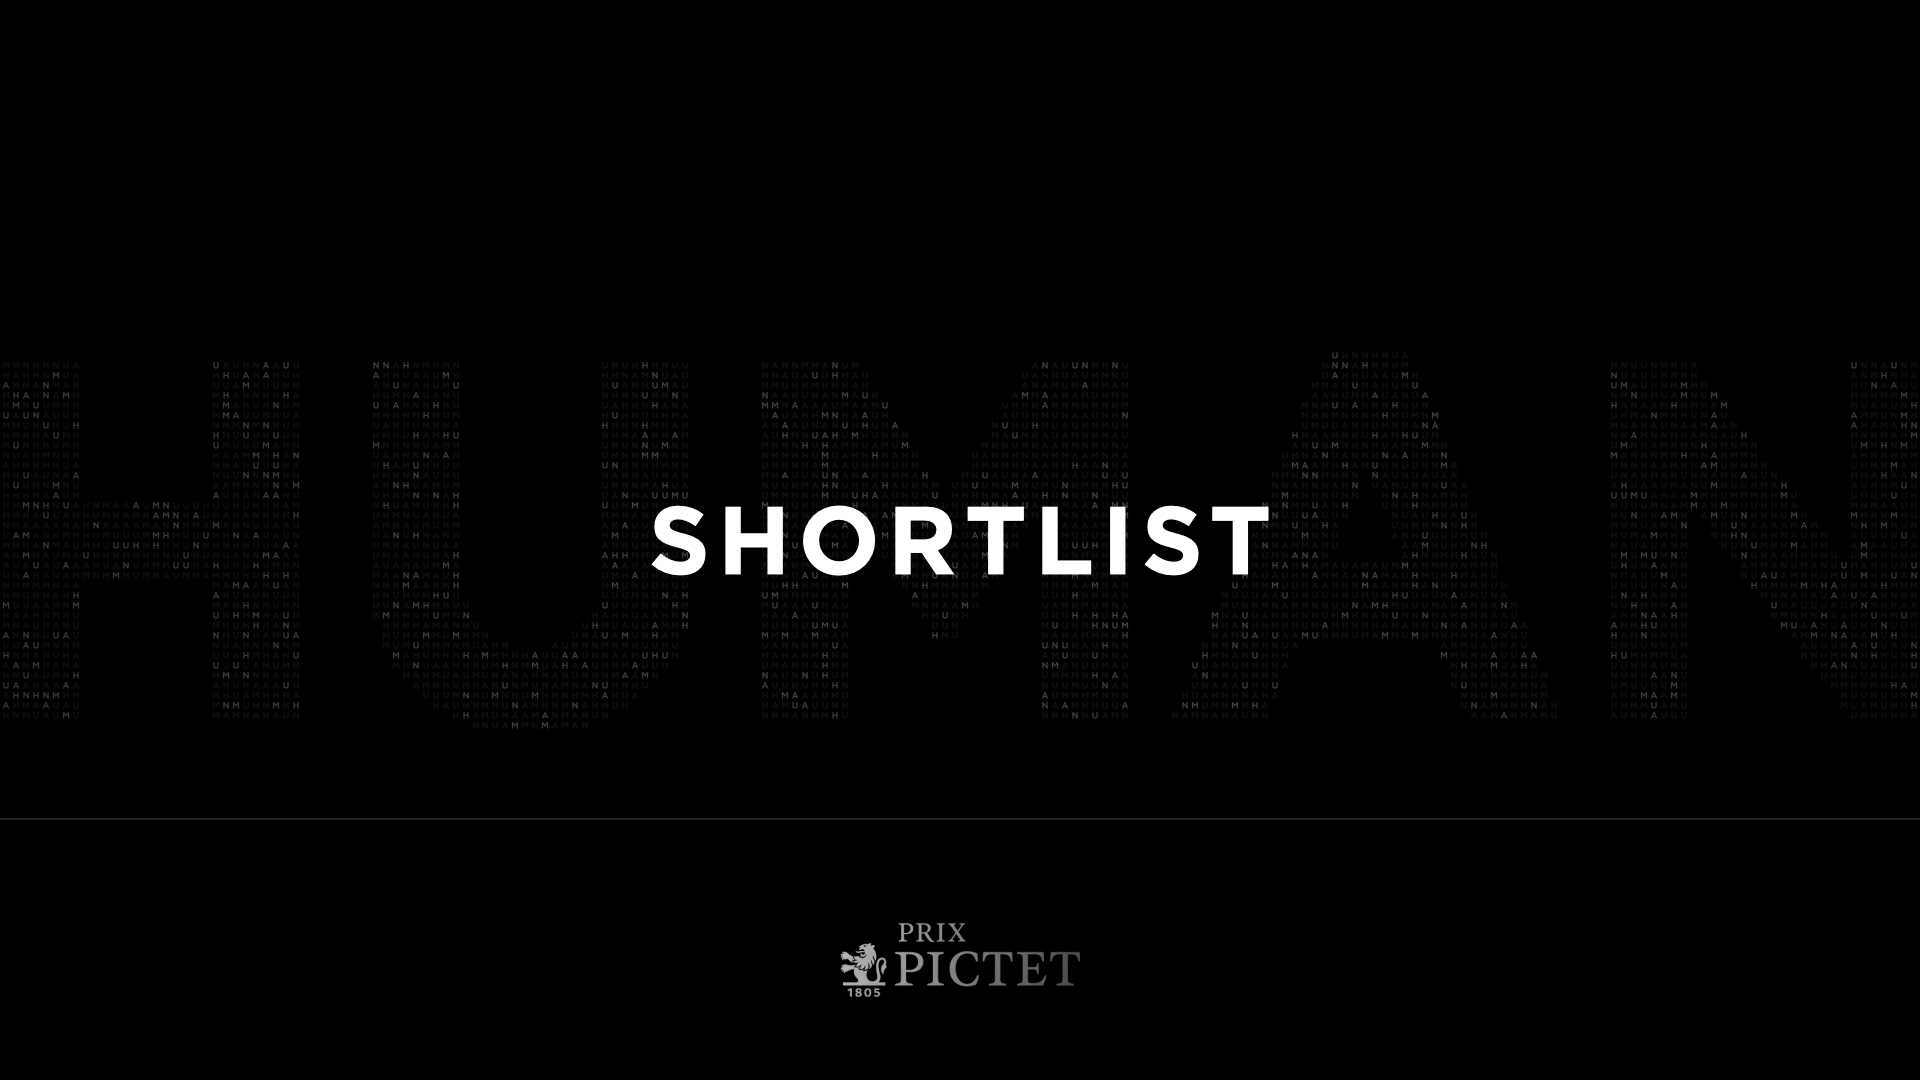 Prix Pictet Human: Shortlist Announced